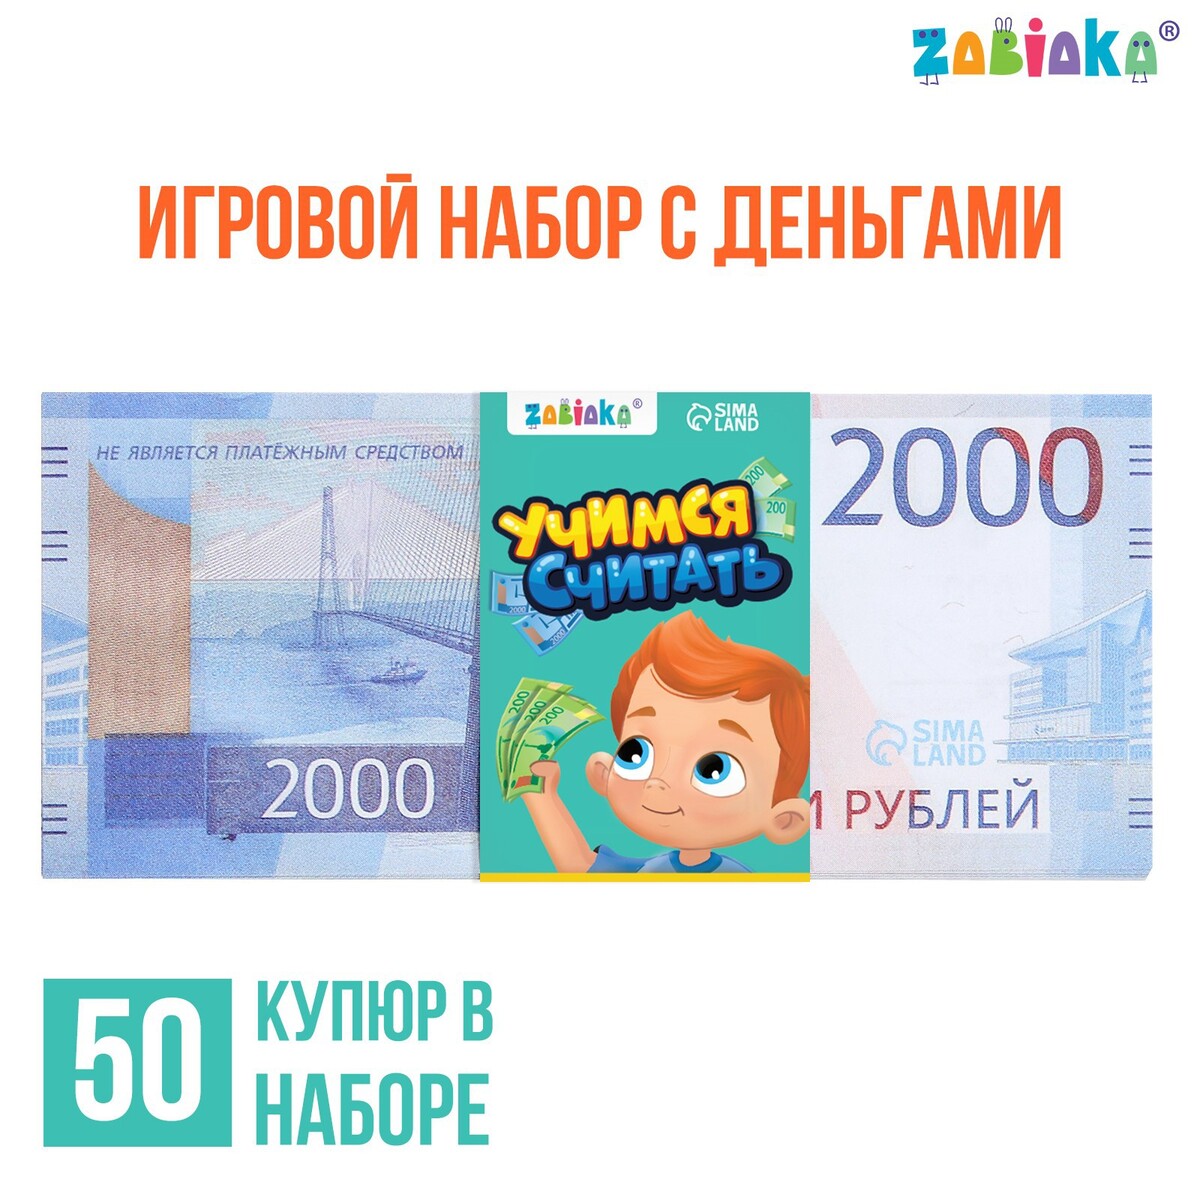 Игровой набор денег игровой набор денег учимся считать 2000 рублей 50 купюр